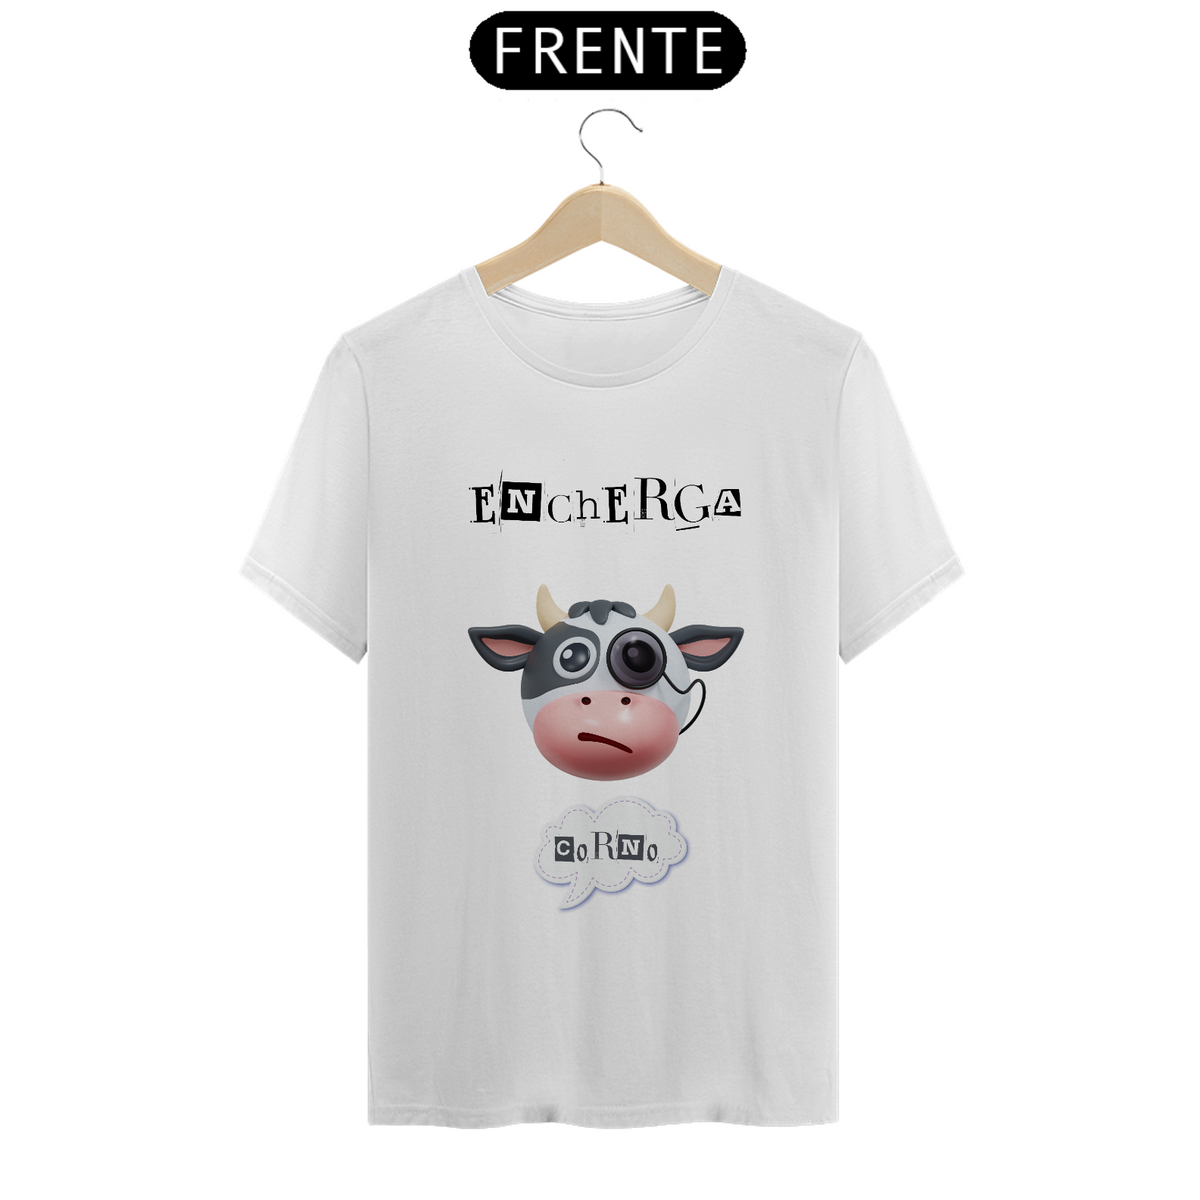 Nome do produto: Camiseta T-Shirt Classic Unissex / Encherga Corno 